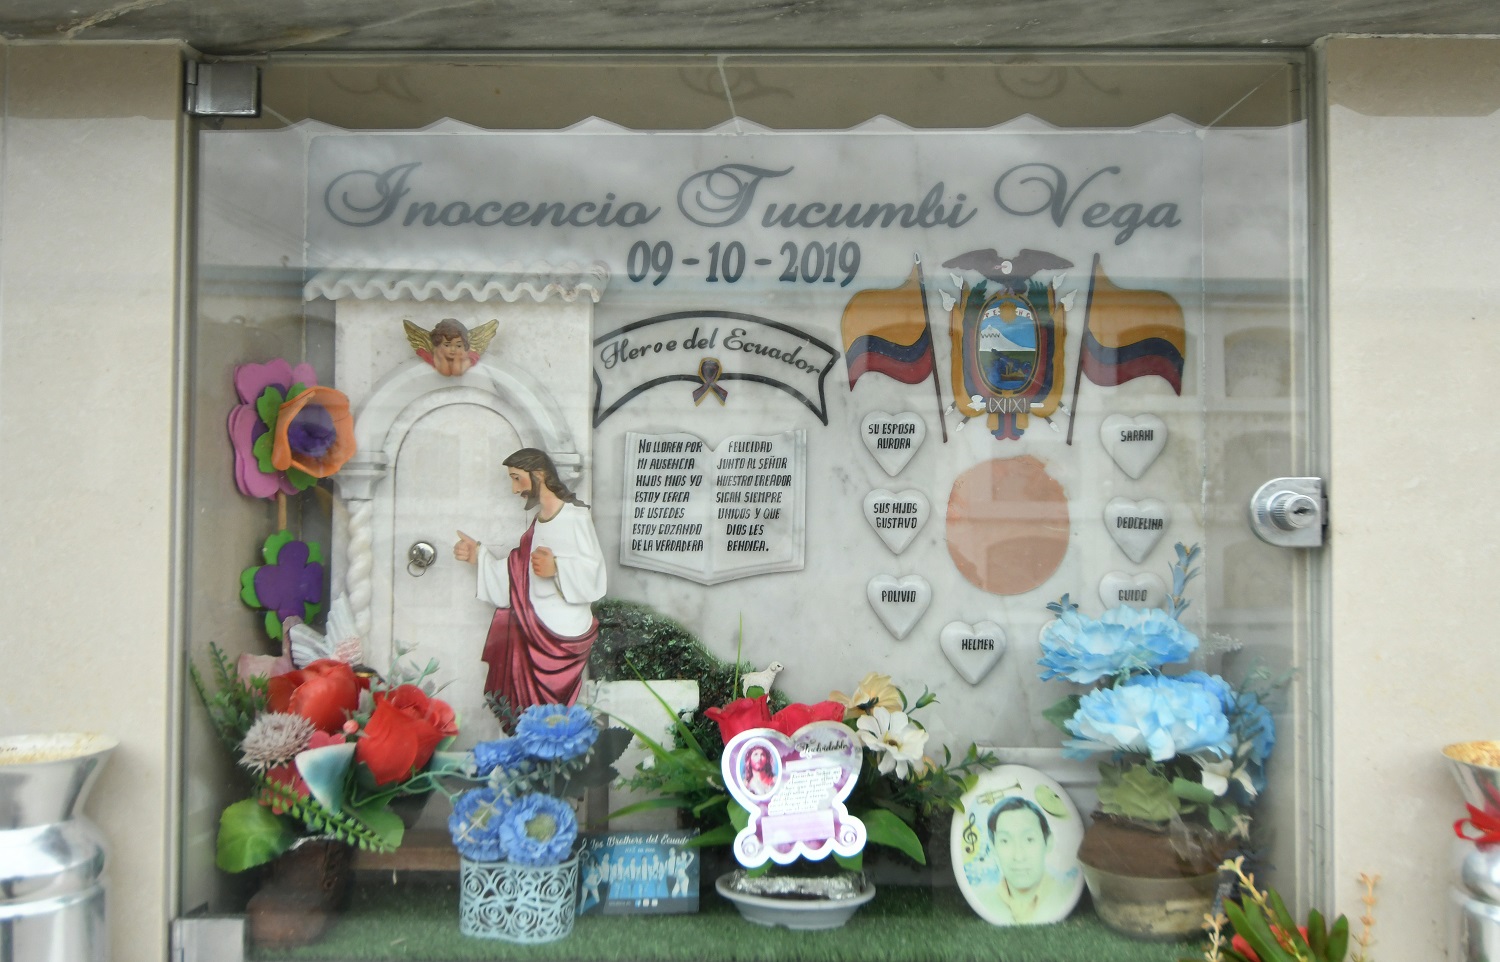  El féretro del líder indígena Inocencio Tucumbi está enterrado en el cementerio de Pujulí, en Cotopaxi | Foto: Álfredo Cárdenas / EL UNIVERSO